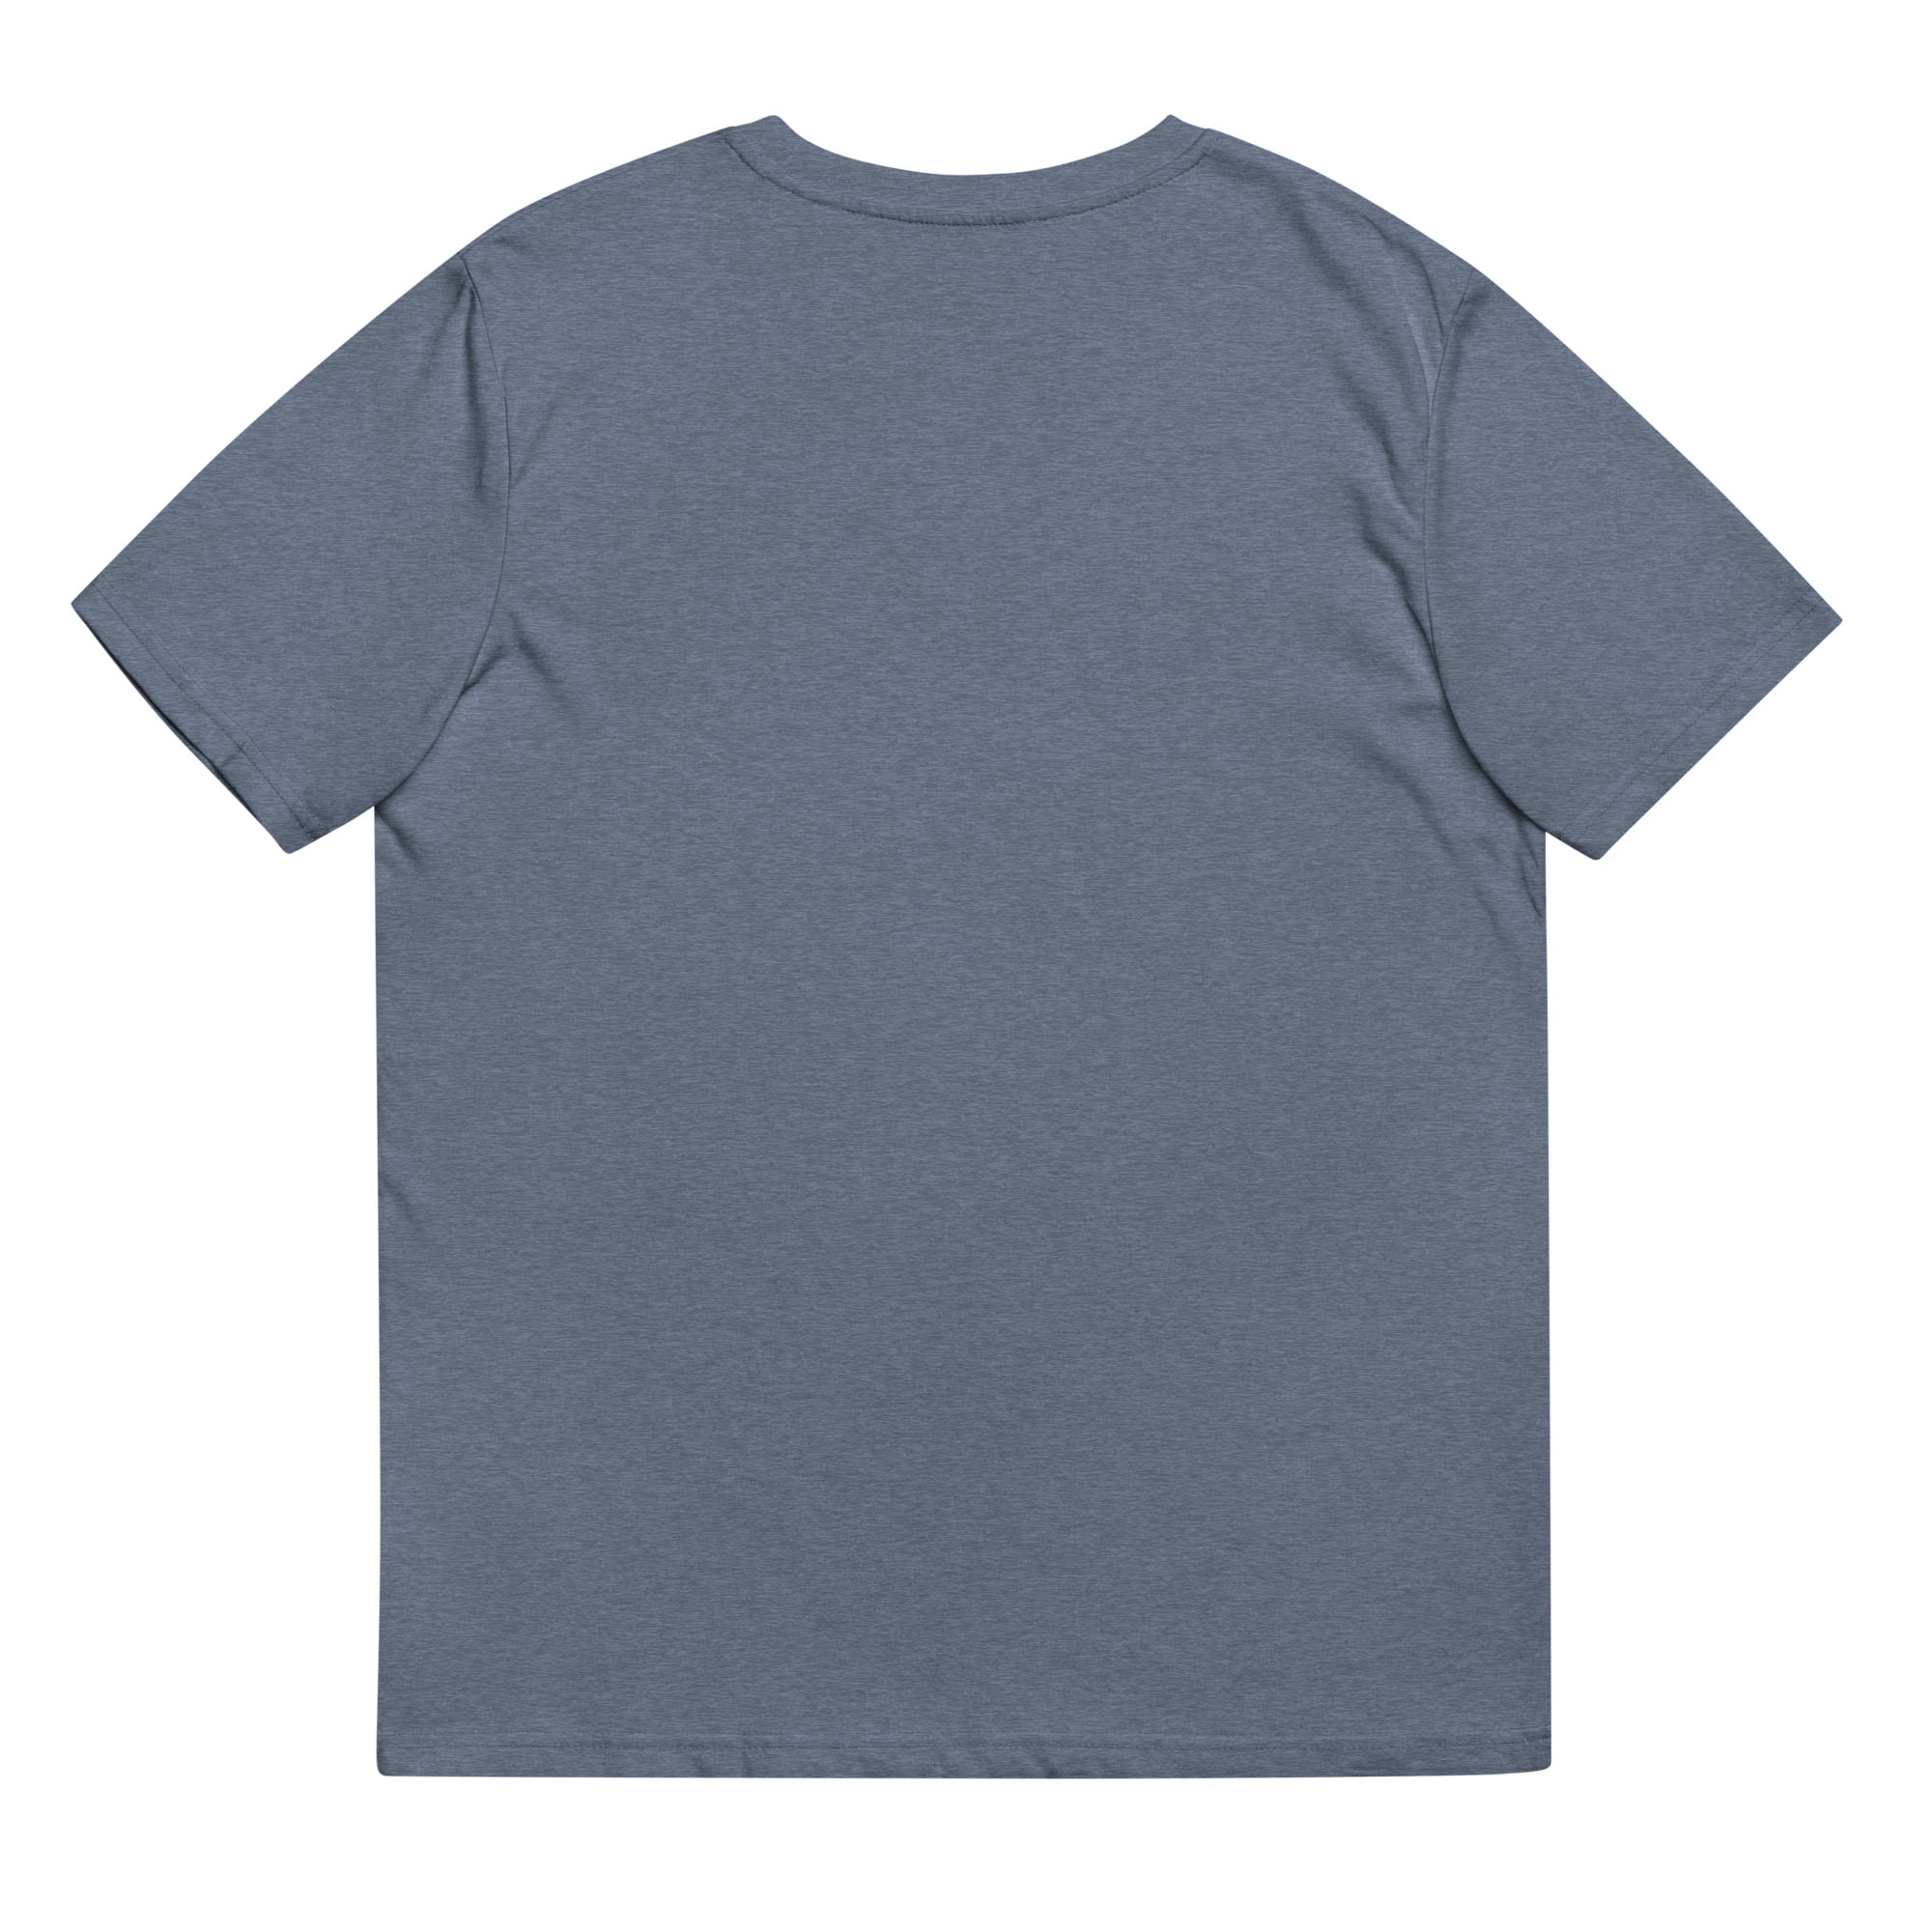 unisex organic cotton t shirt dark heather blue back 64d270a94f4d1.jpg